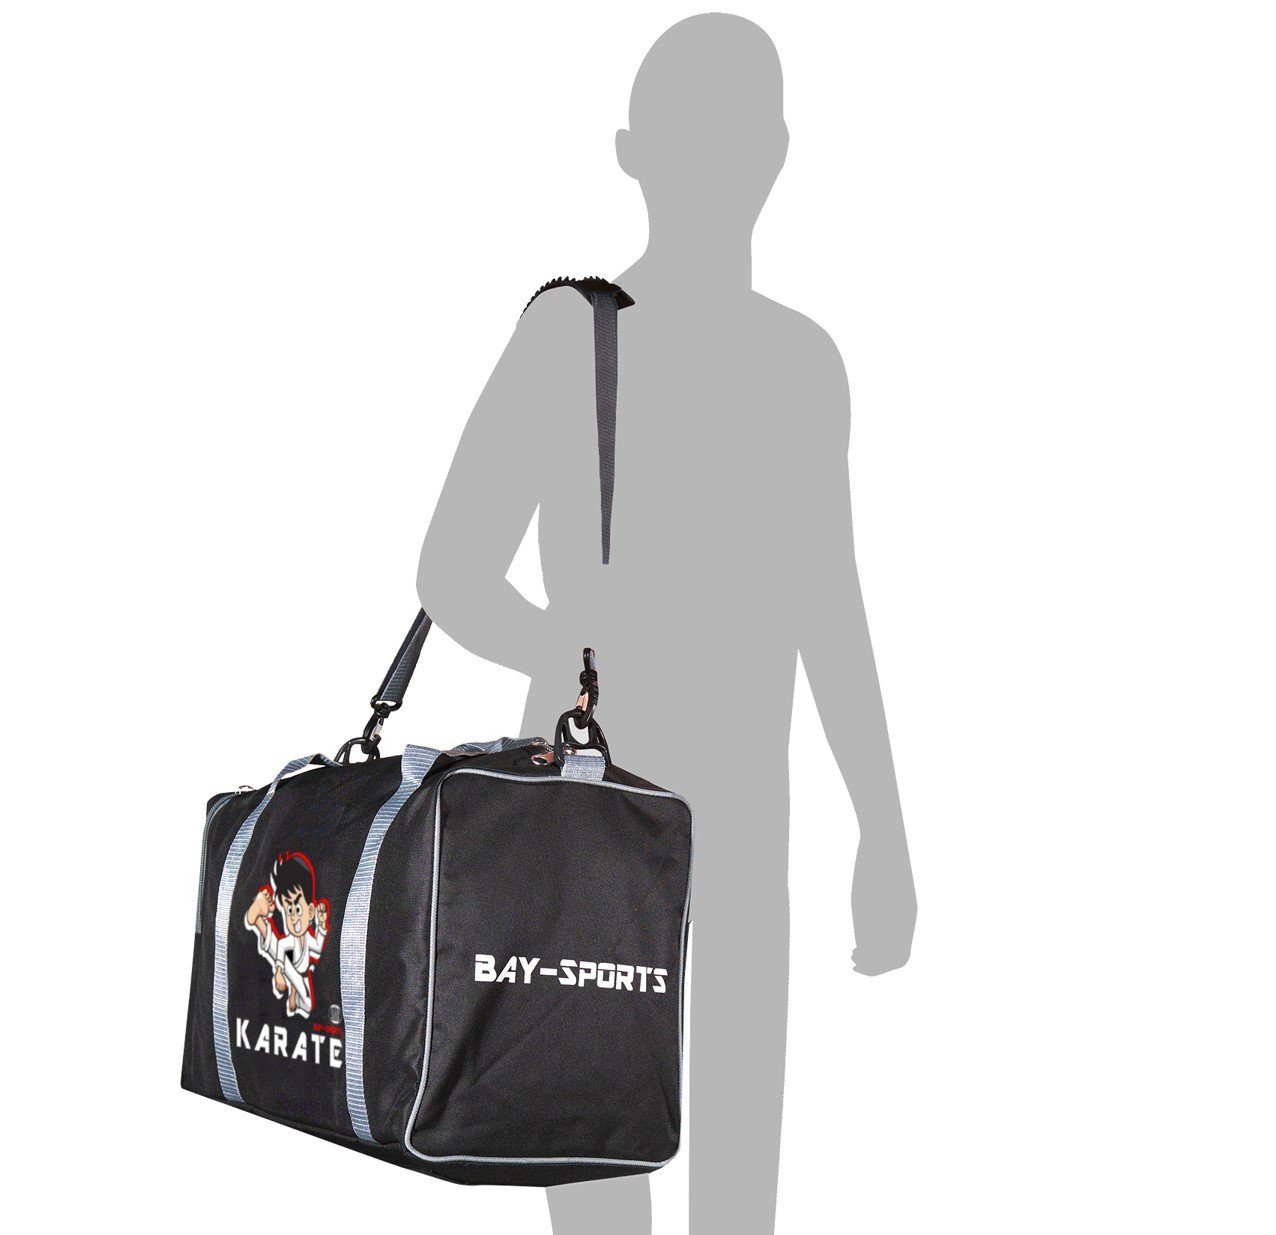 Sporttasche schwarz/grau Sporttasche Kinder 50 BAY-Sports cm für Karate